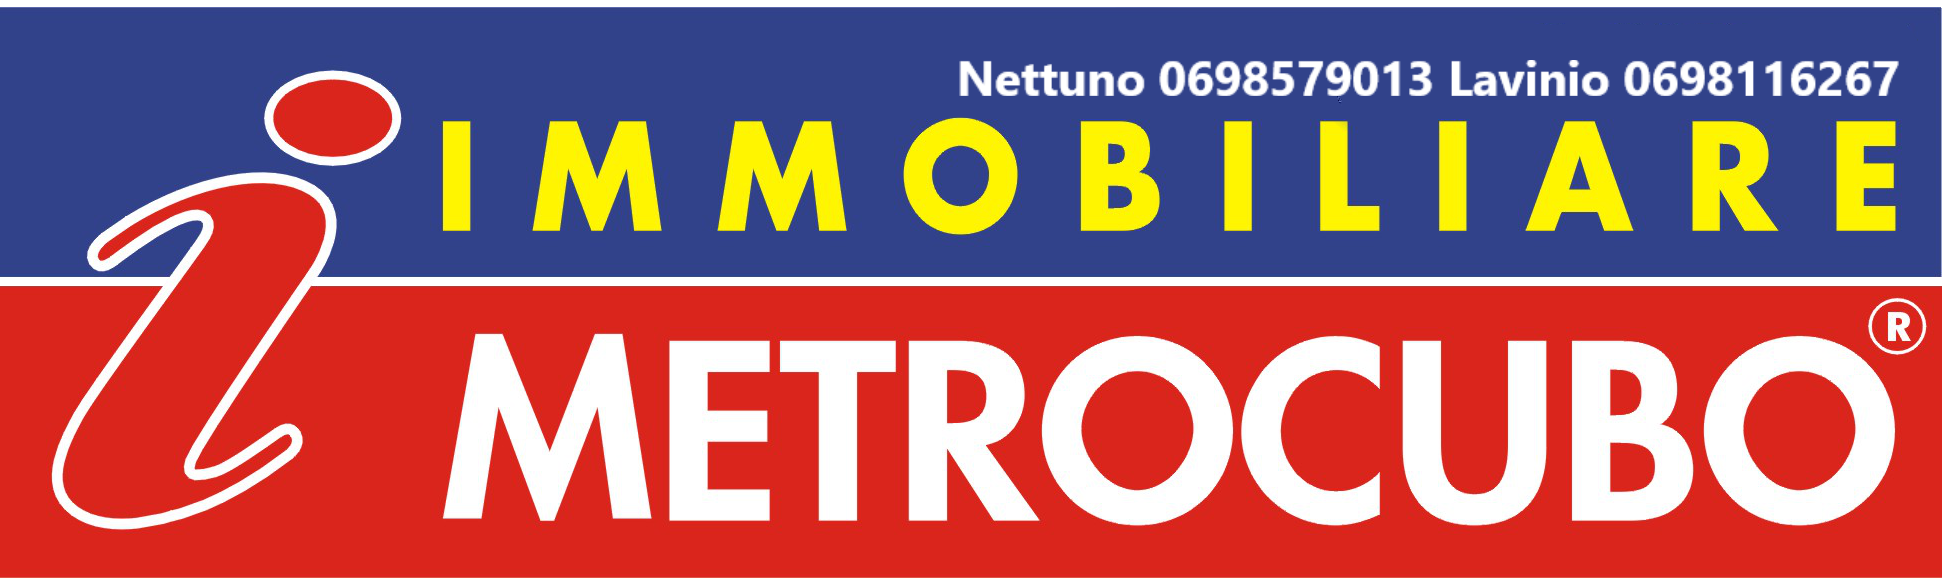 Immobiliare Metrocubo